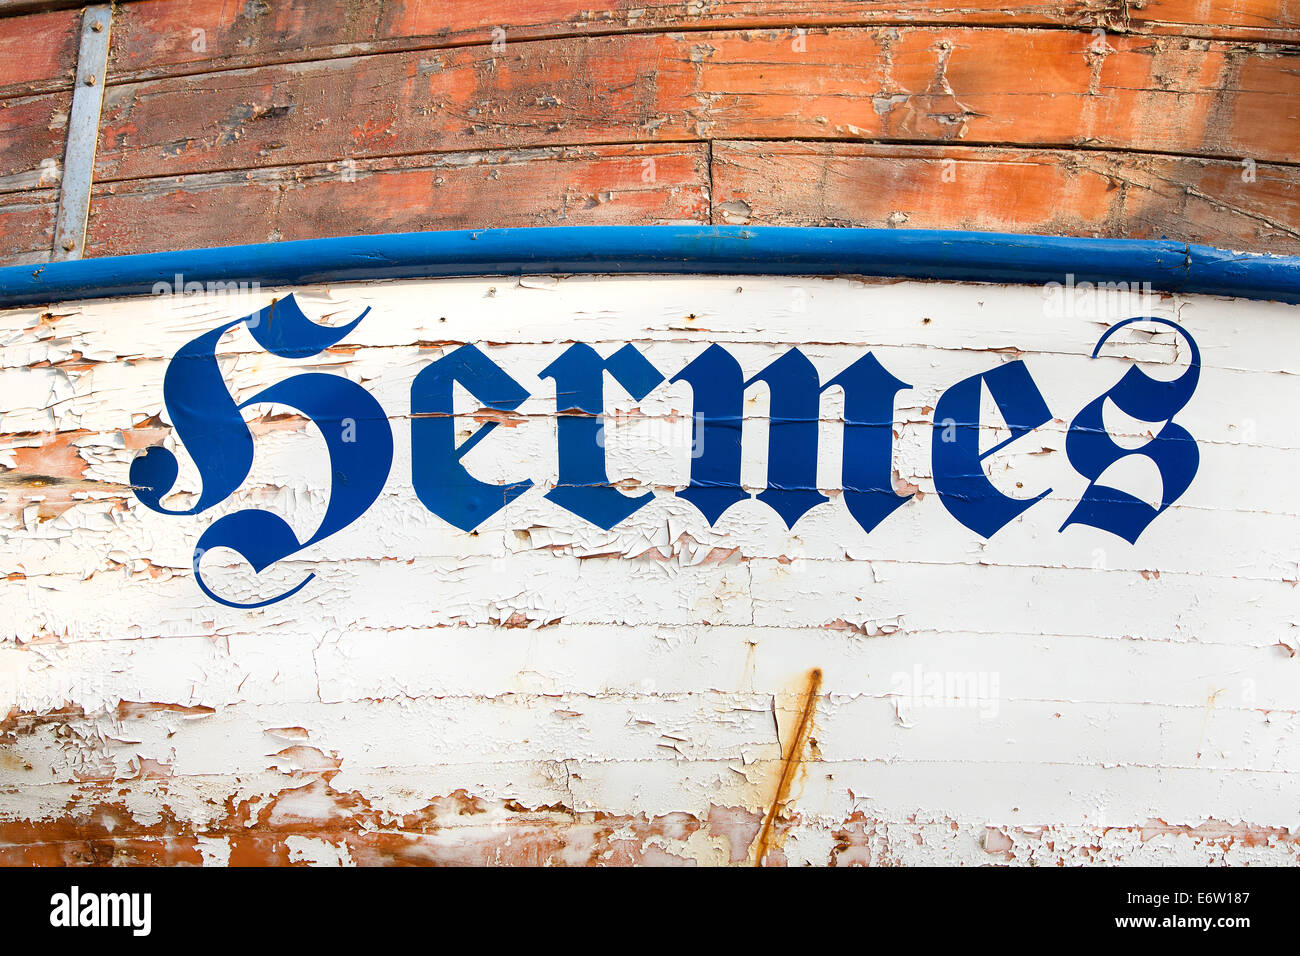 Das Wort oder den Namen "Hermes" auf einem alten hölzernen Schiff in rustikal und shabby chic-Stil. Stockfoto